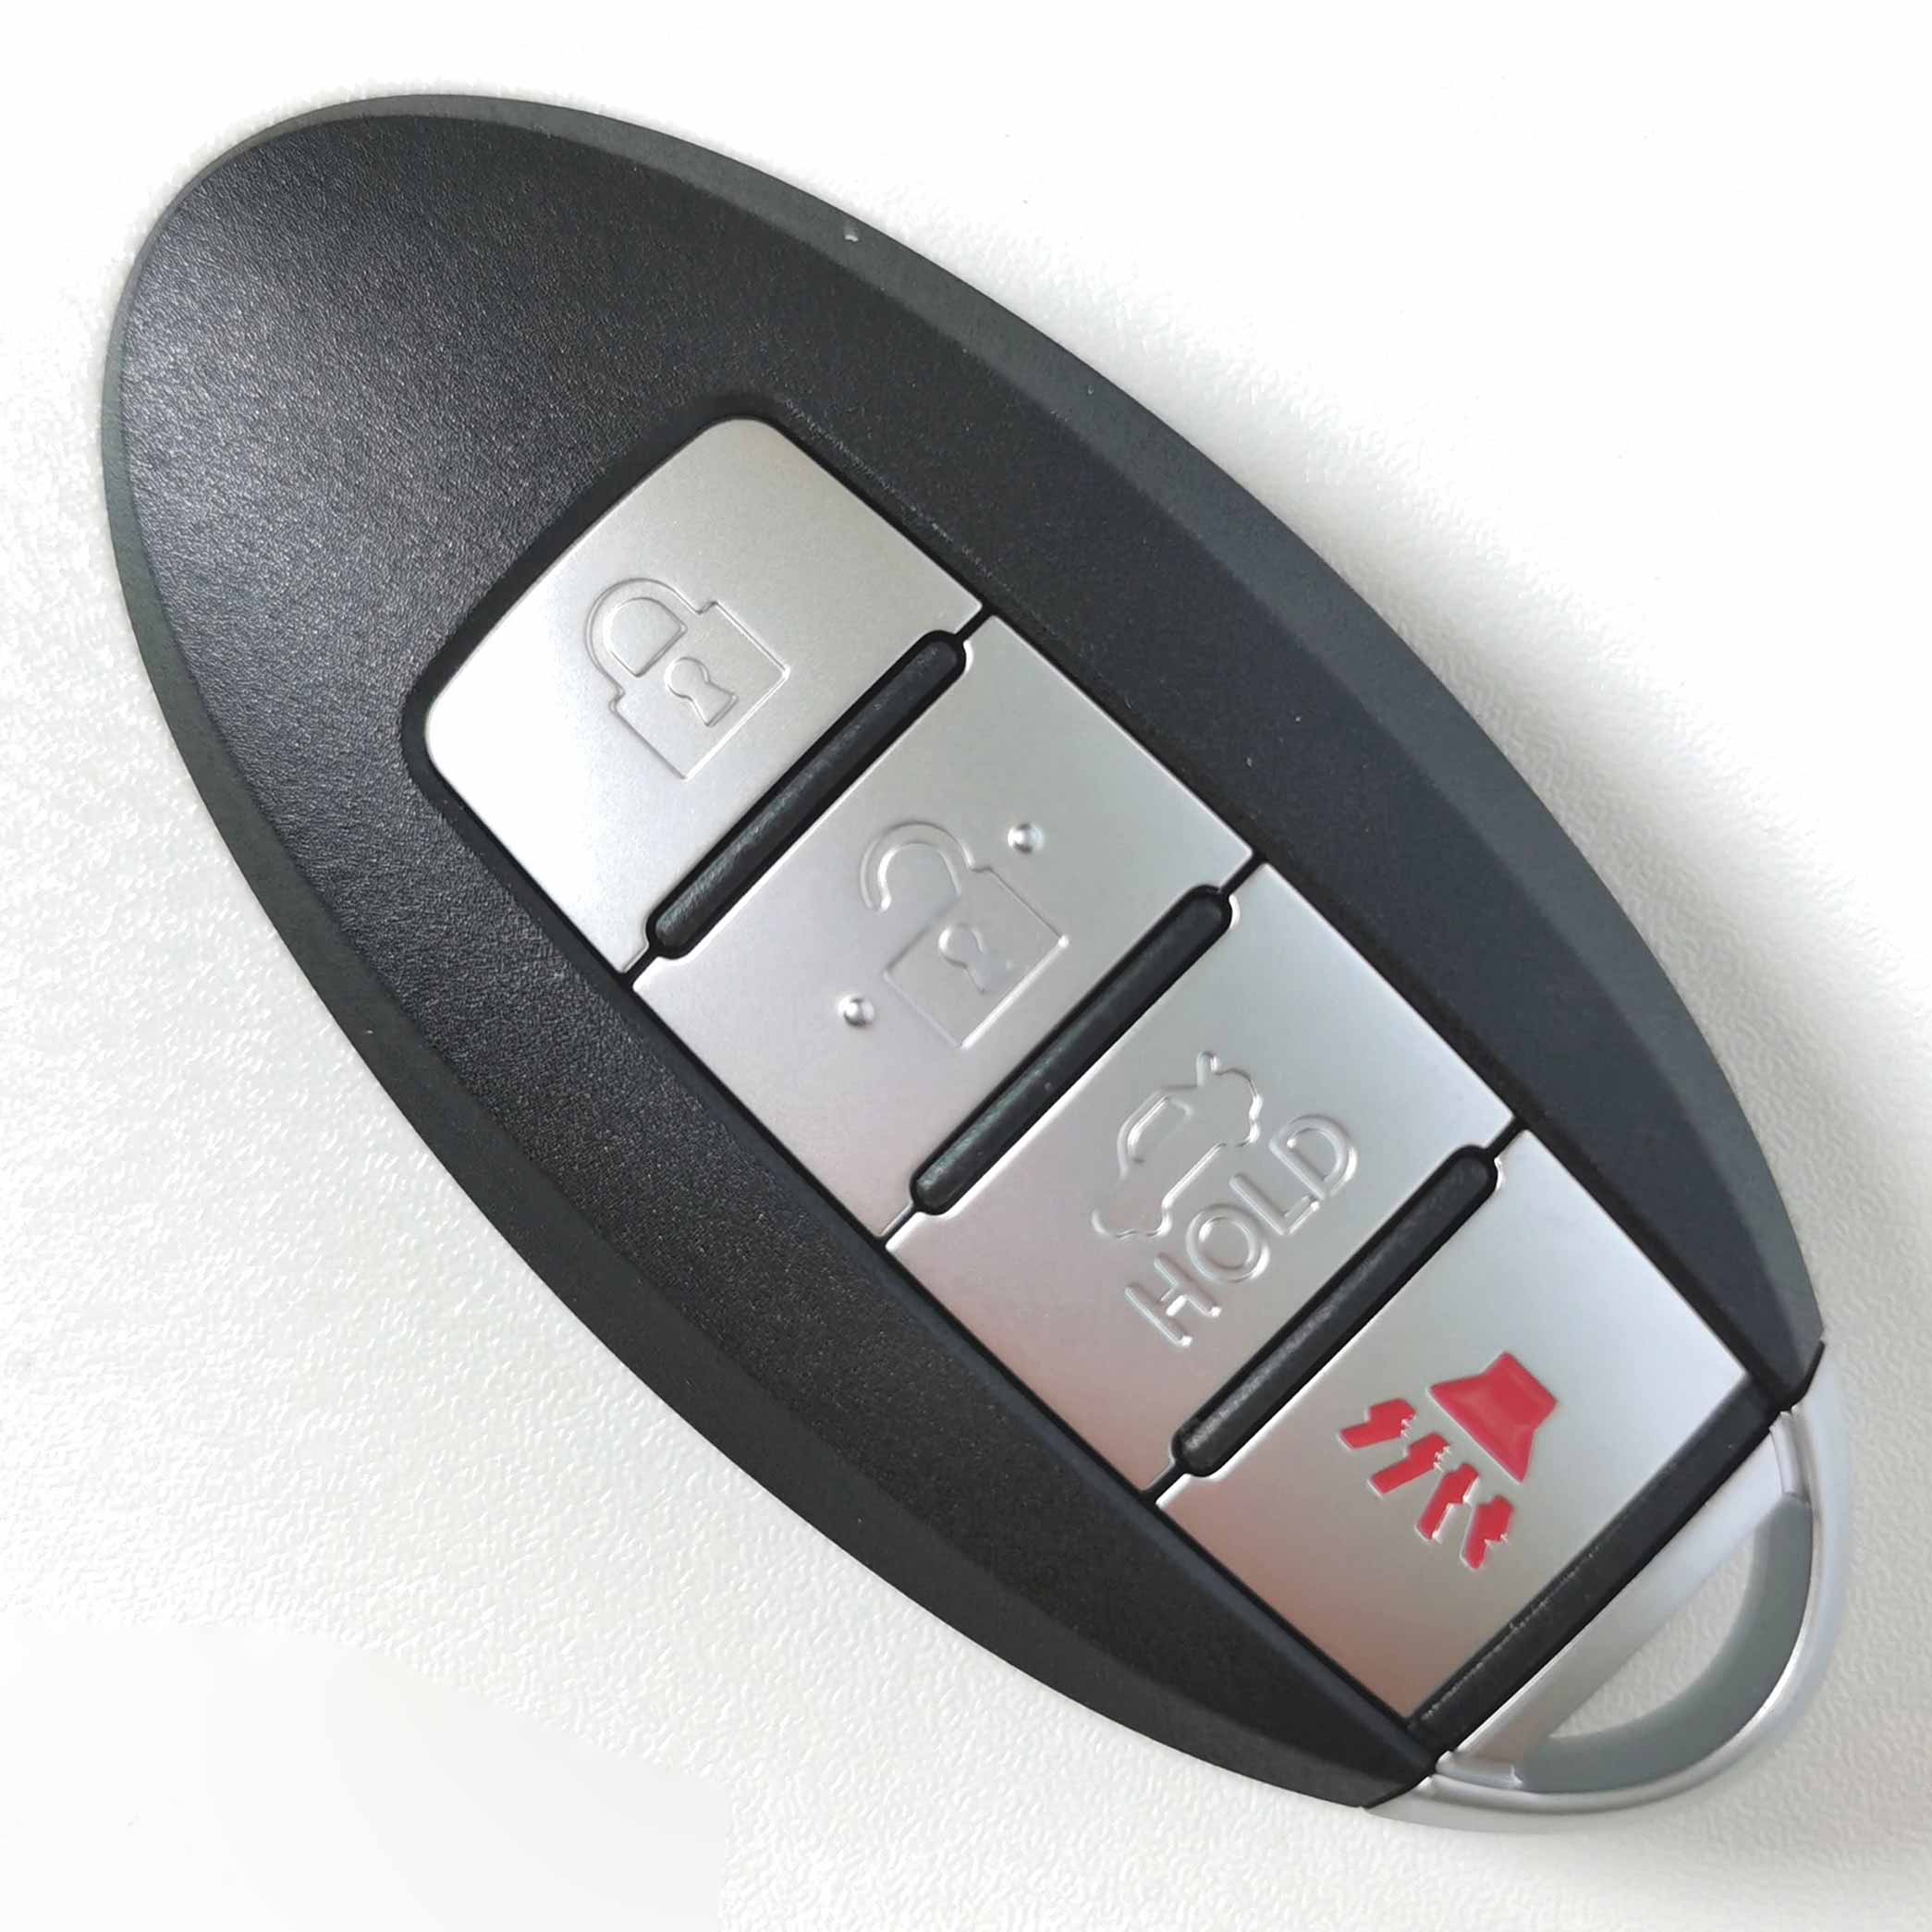 434 Smart Key for Nissan Pathfinder 2013-2016 / KR5S180144014 / 47 Chip